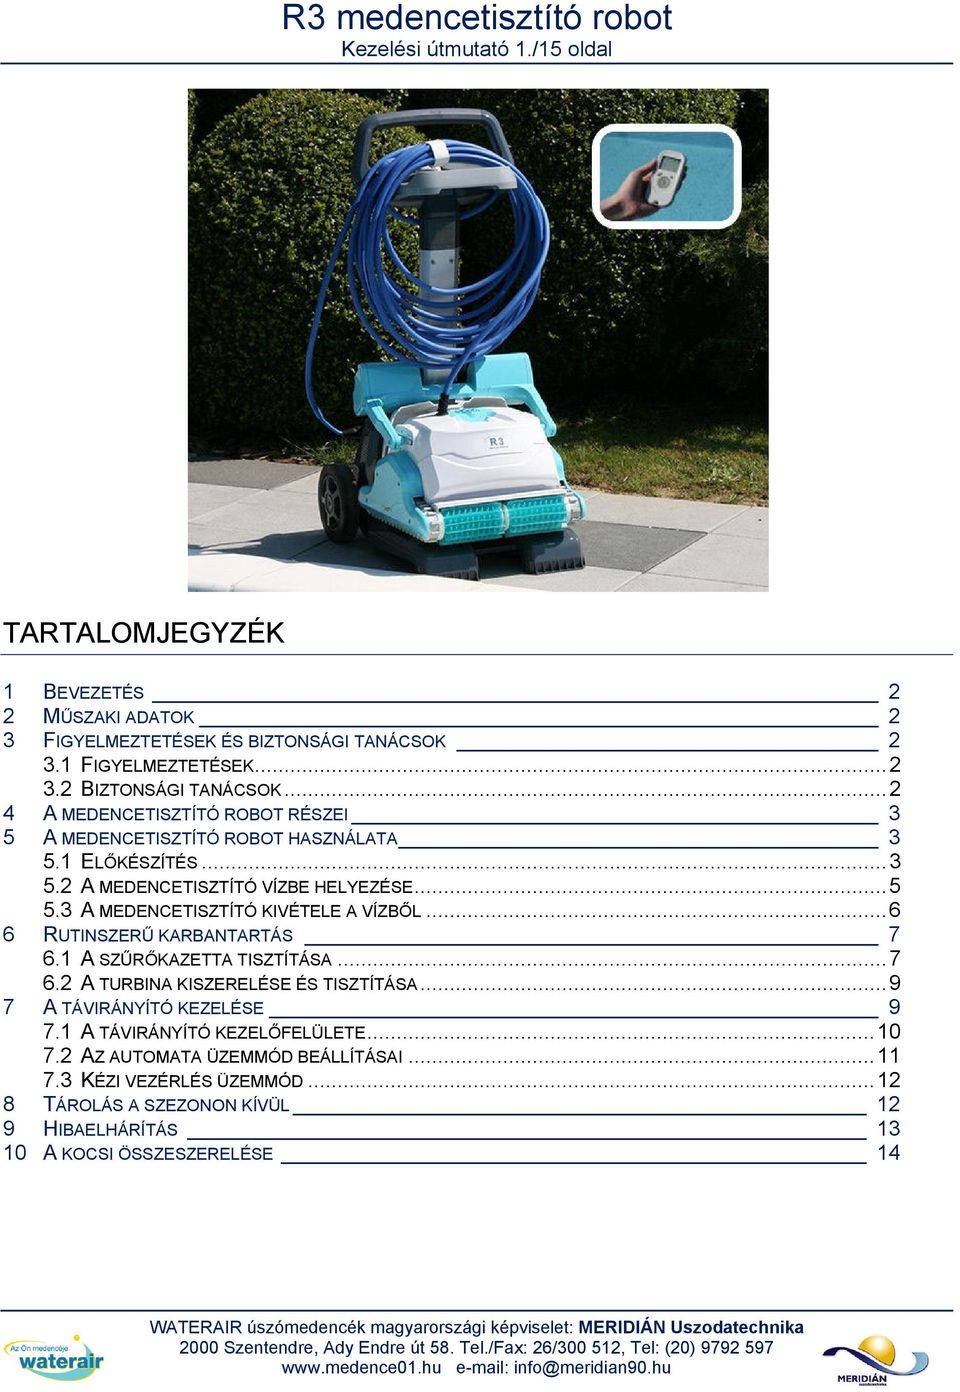 R3 medencetisztító robot Kezelési útmutató 1./15 oldal - PDF Ingyenes  letöltés